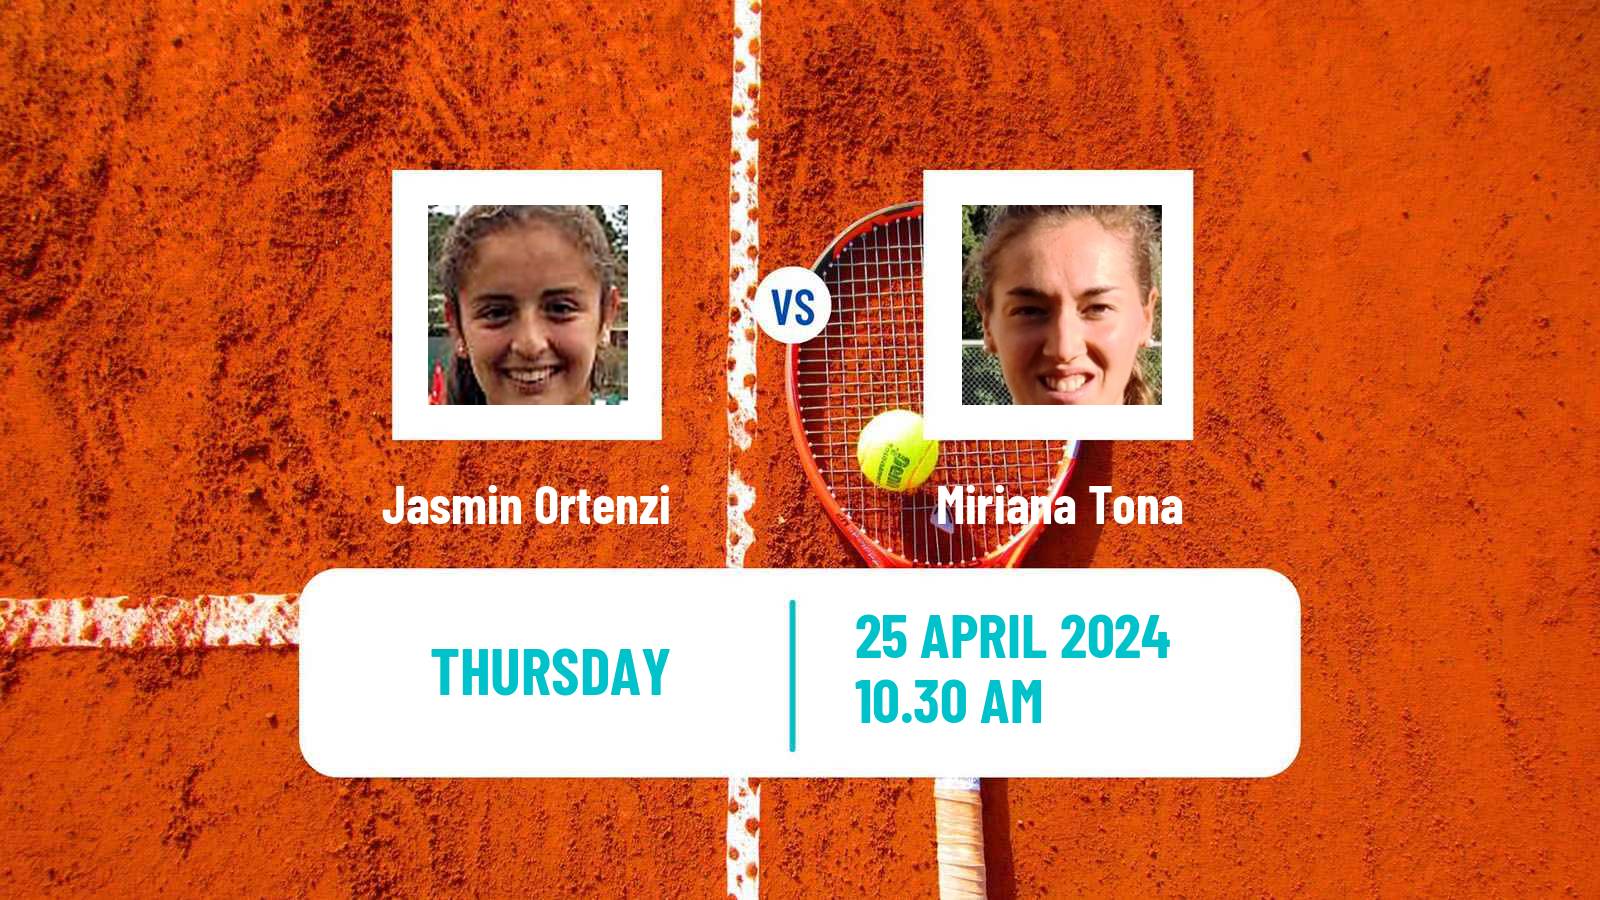 Tennis ITF W35 Mosquera Women Jasmin Ortenzi - Miriana Tona